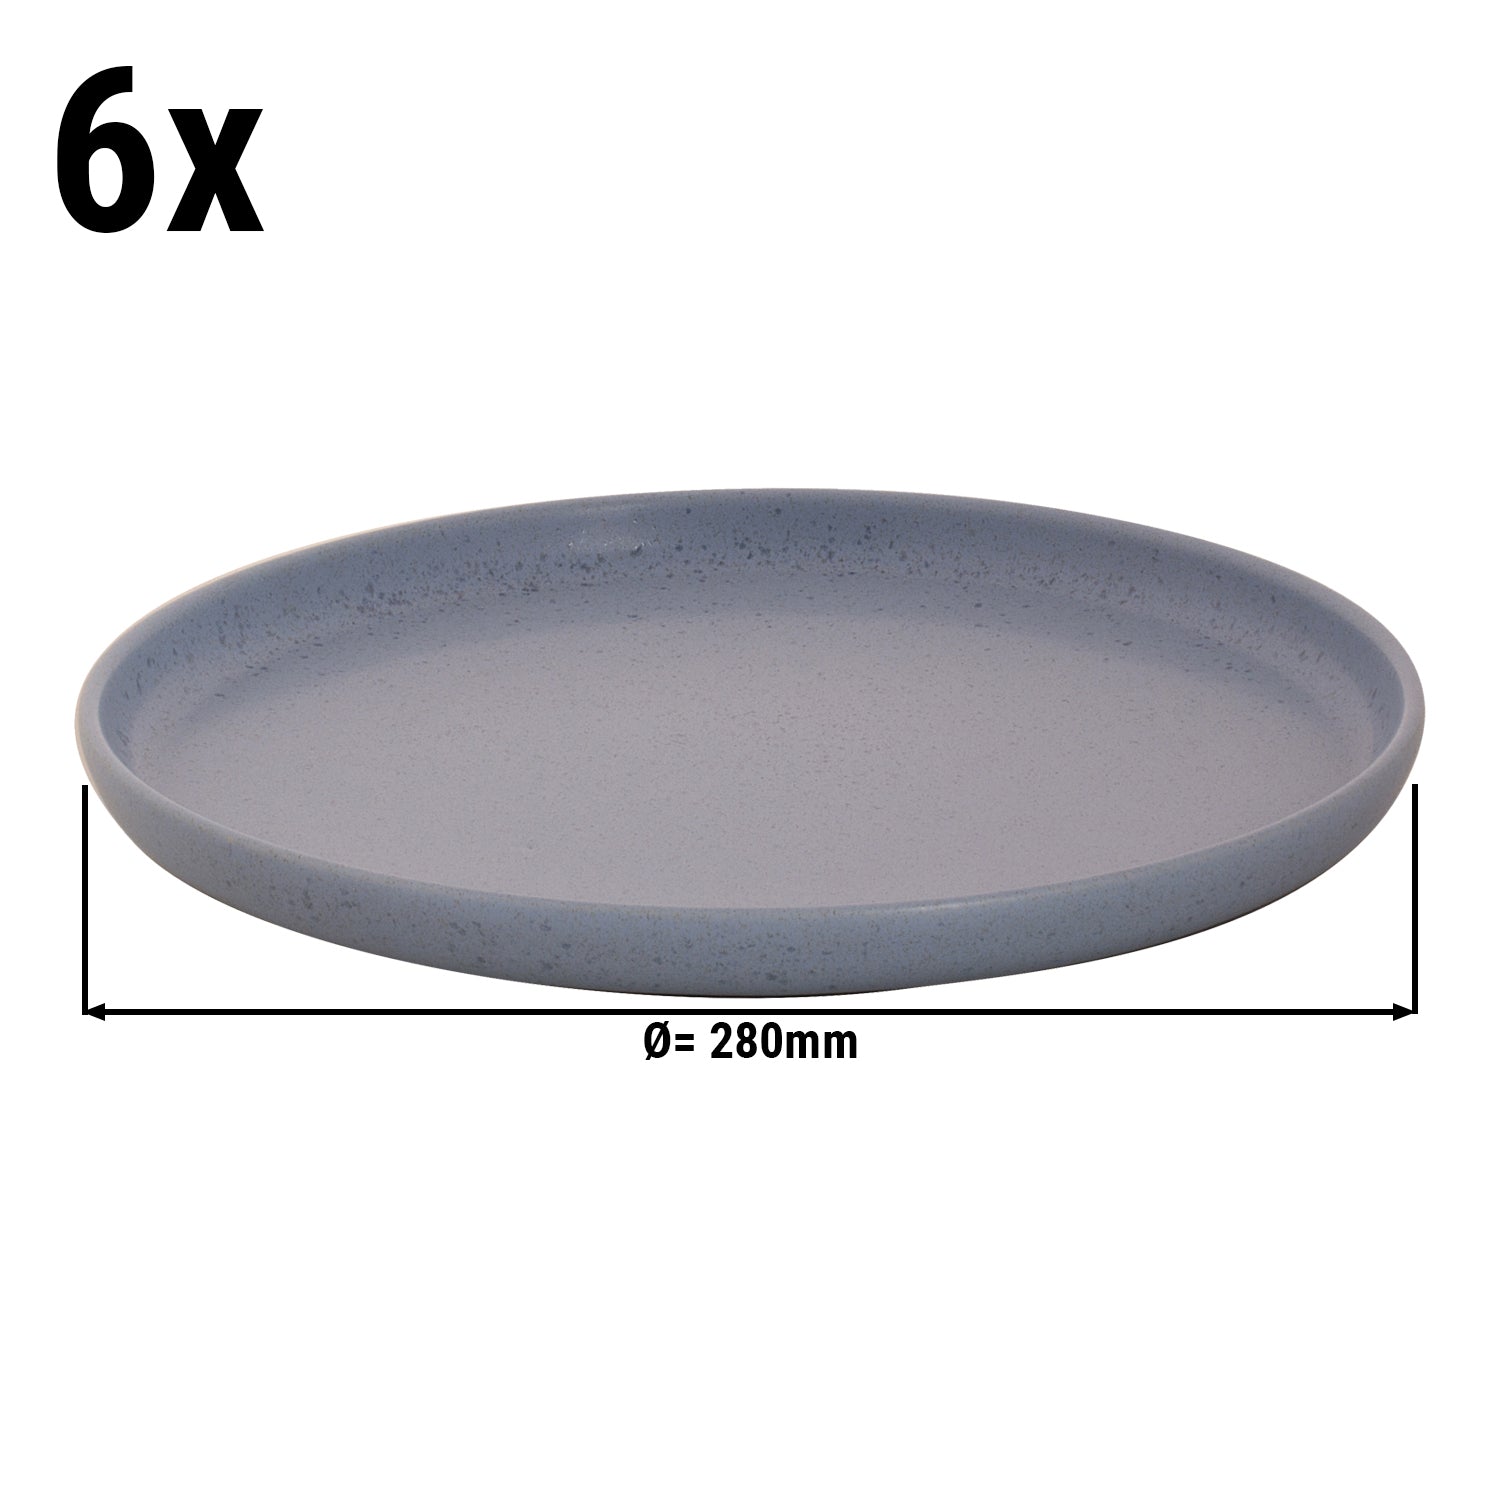 (6 stk) SANDLEID - Flat tallerken - Ø 28 cm - Blå